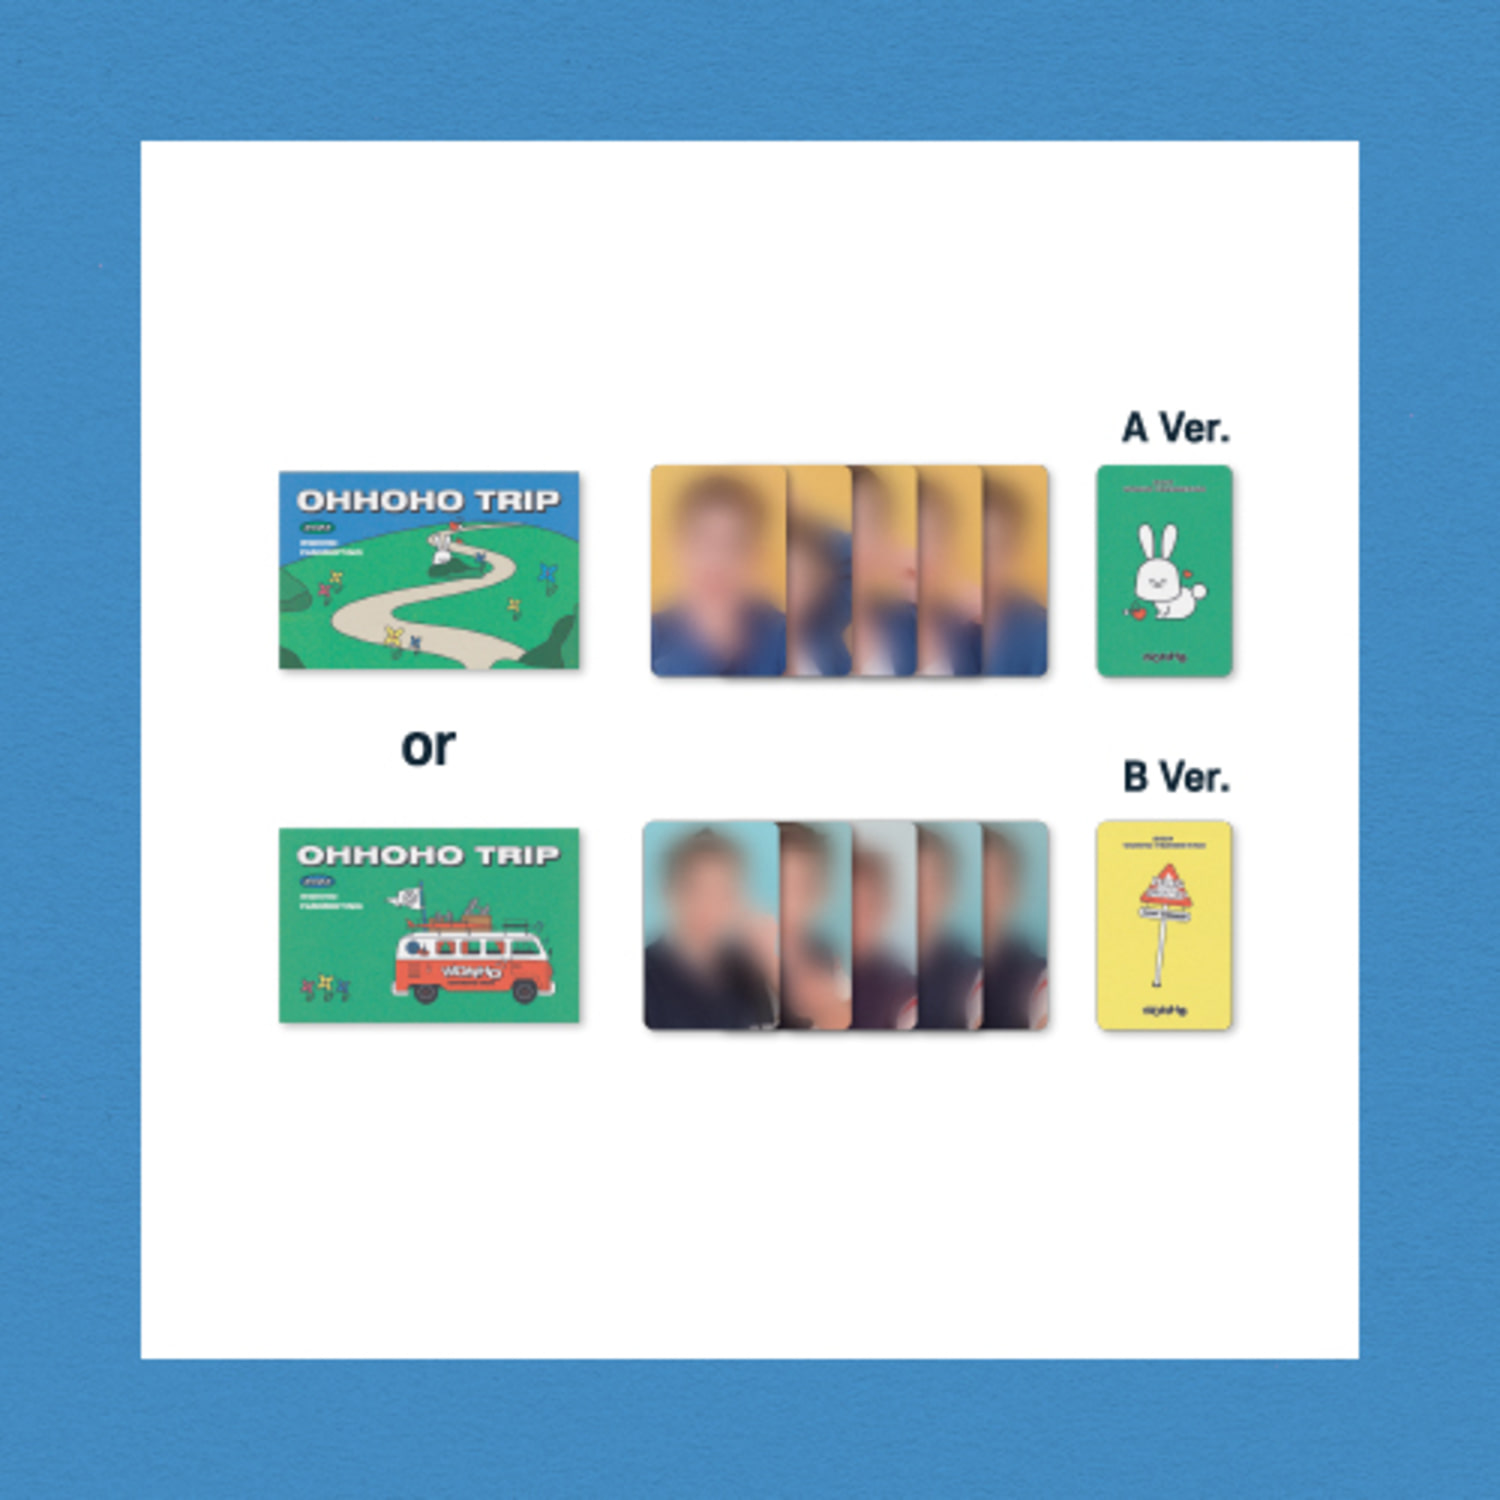 원호(WONHO) [OHHOHO TRIP] OFFICIAL MD - 포토카드 세트 PHOTO CARD SET